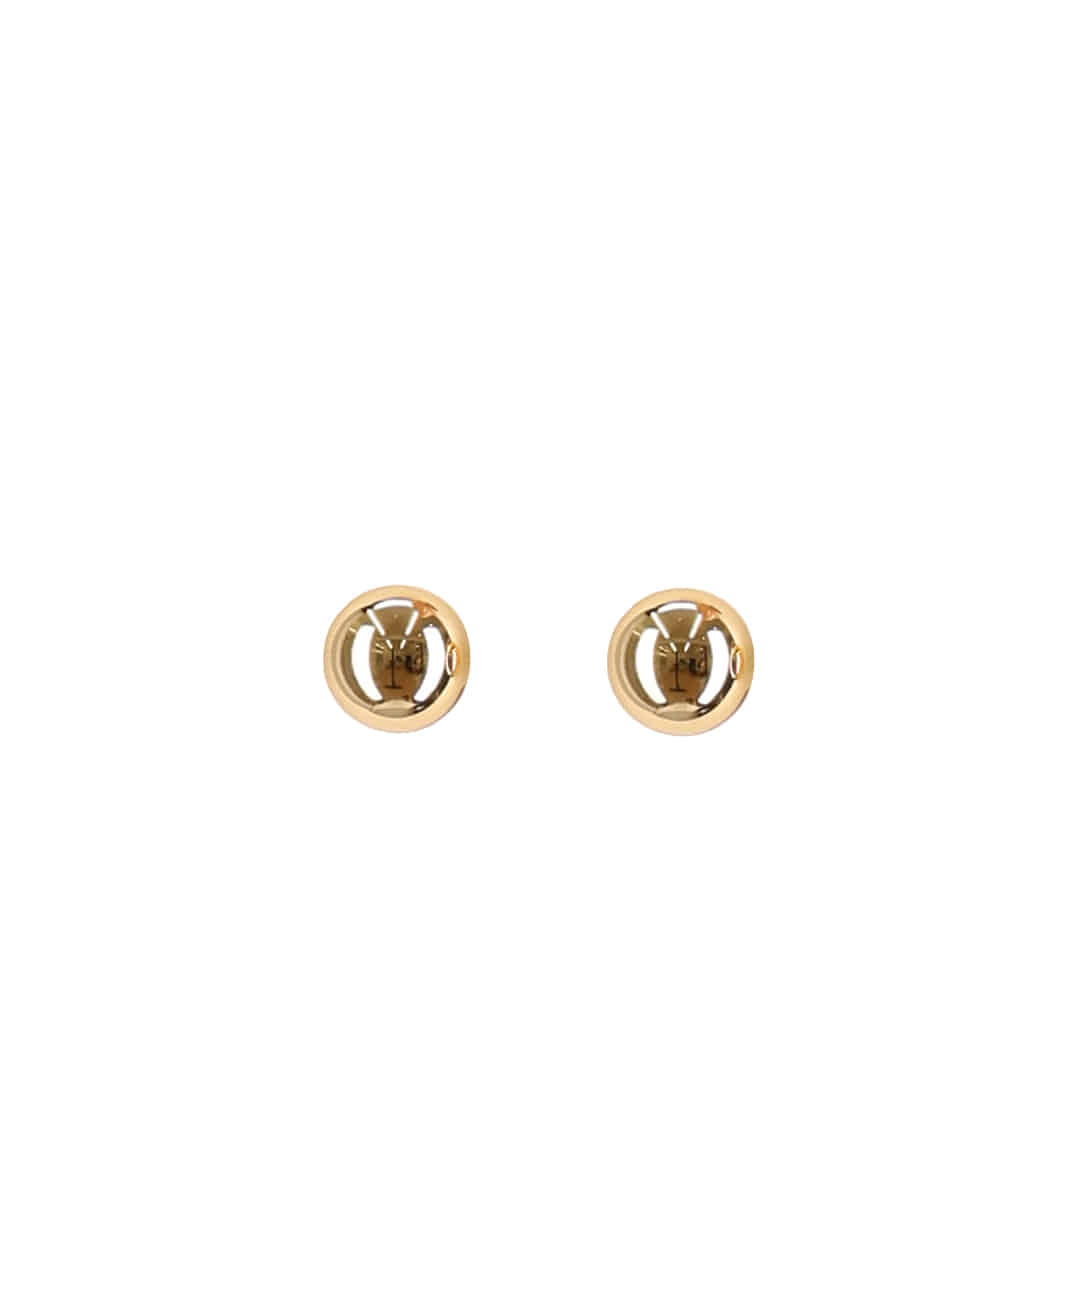 Golden ball earrings